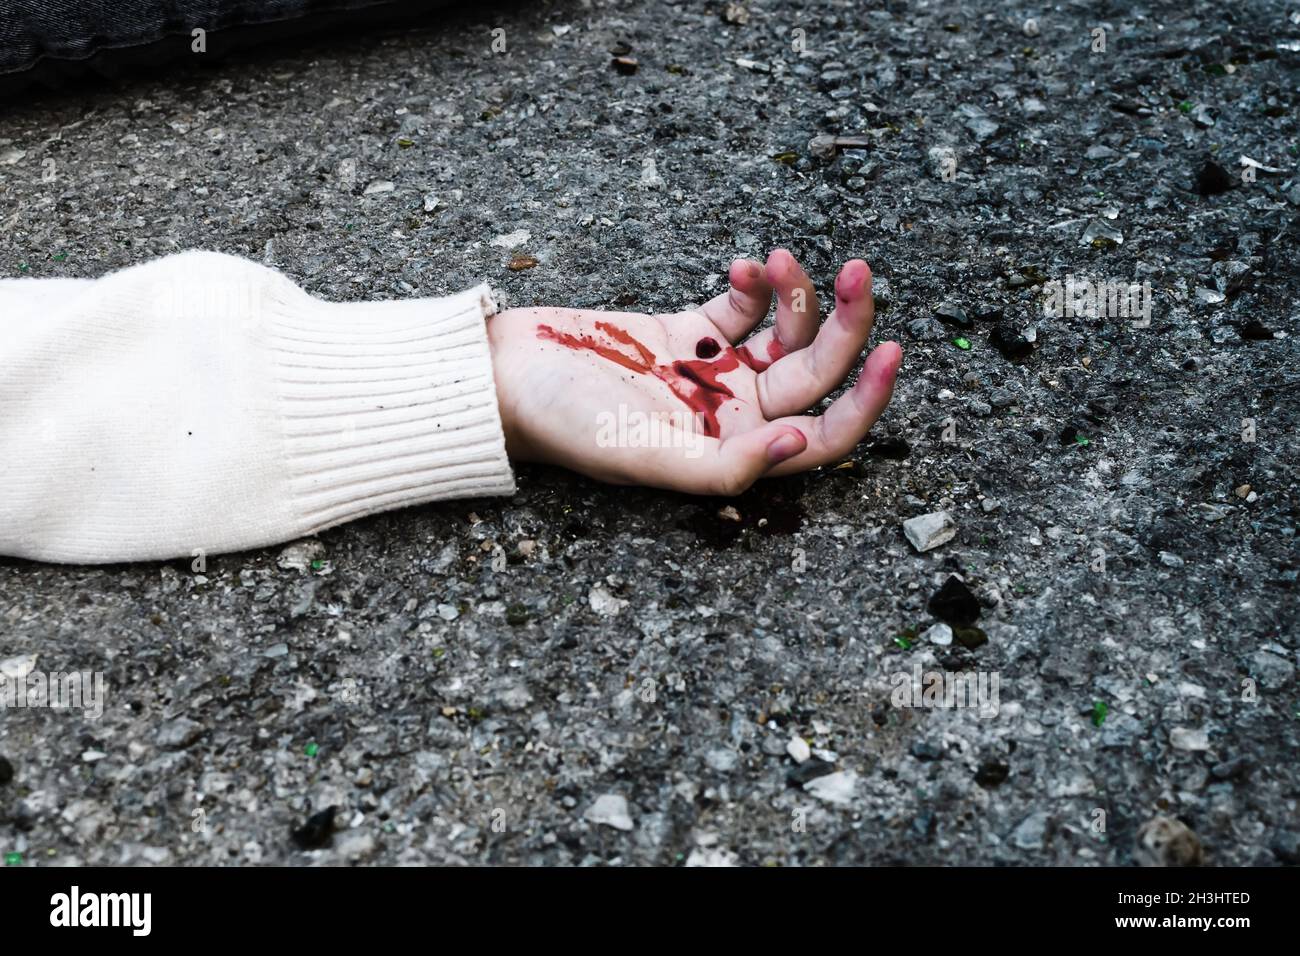 la mano de un hombre está cubierta de sangre sobre el asfalto de la carretera. Foto de stock